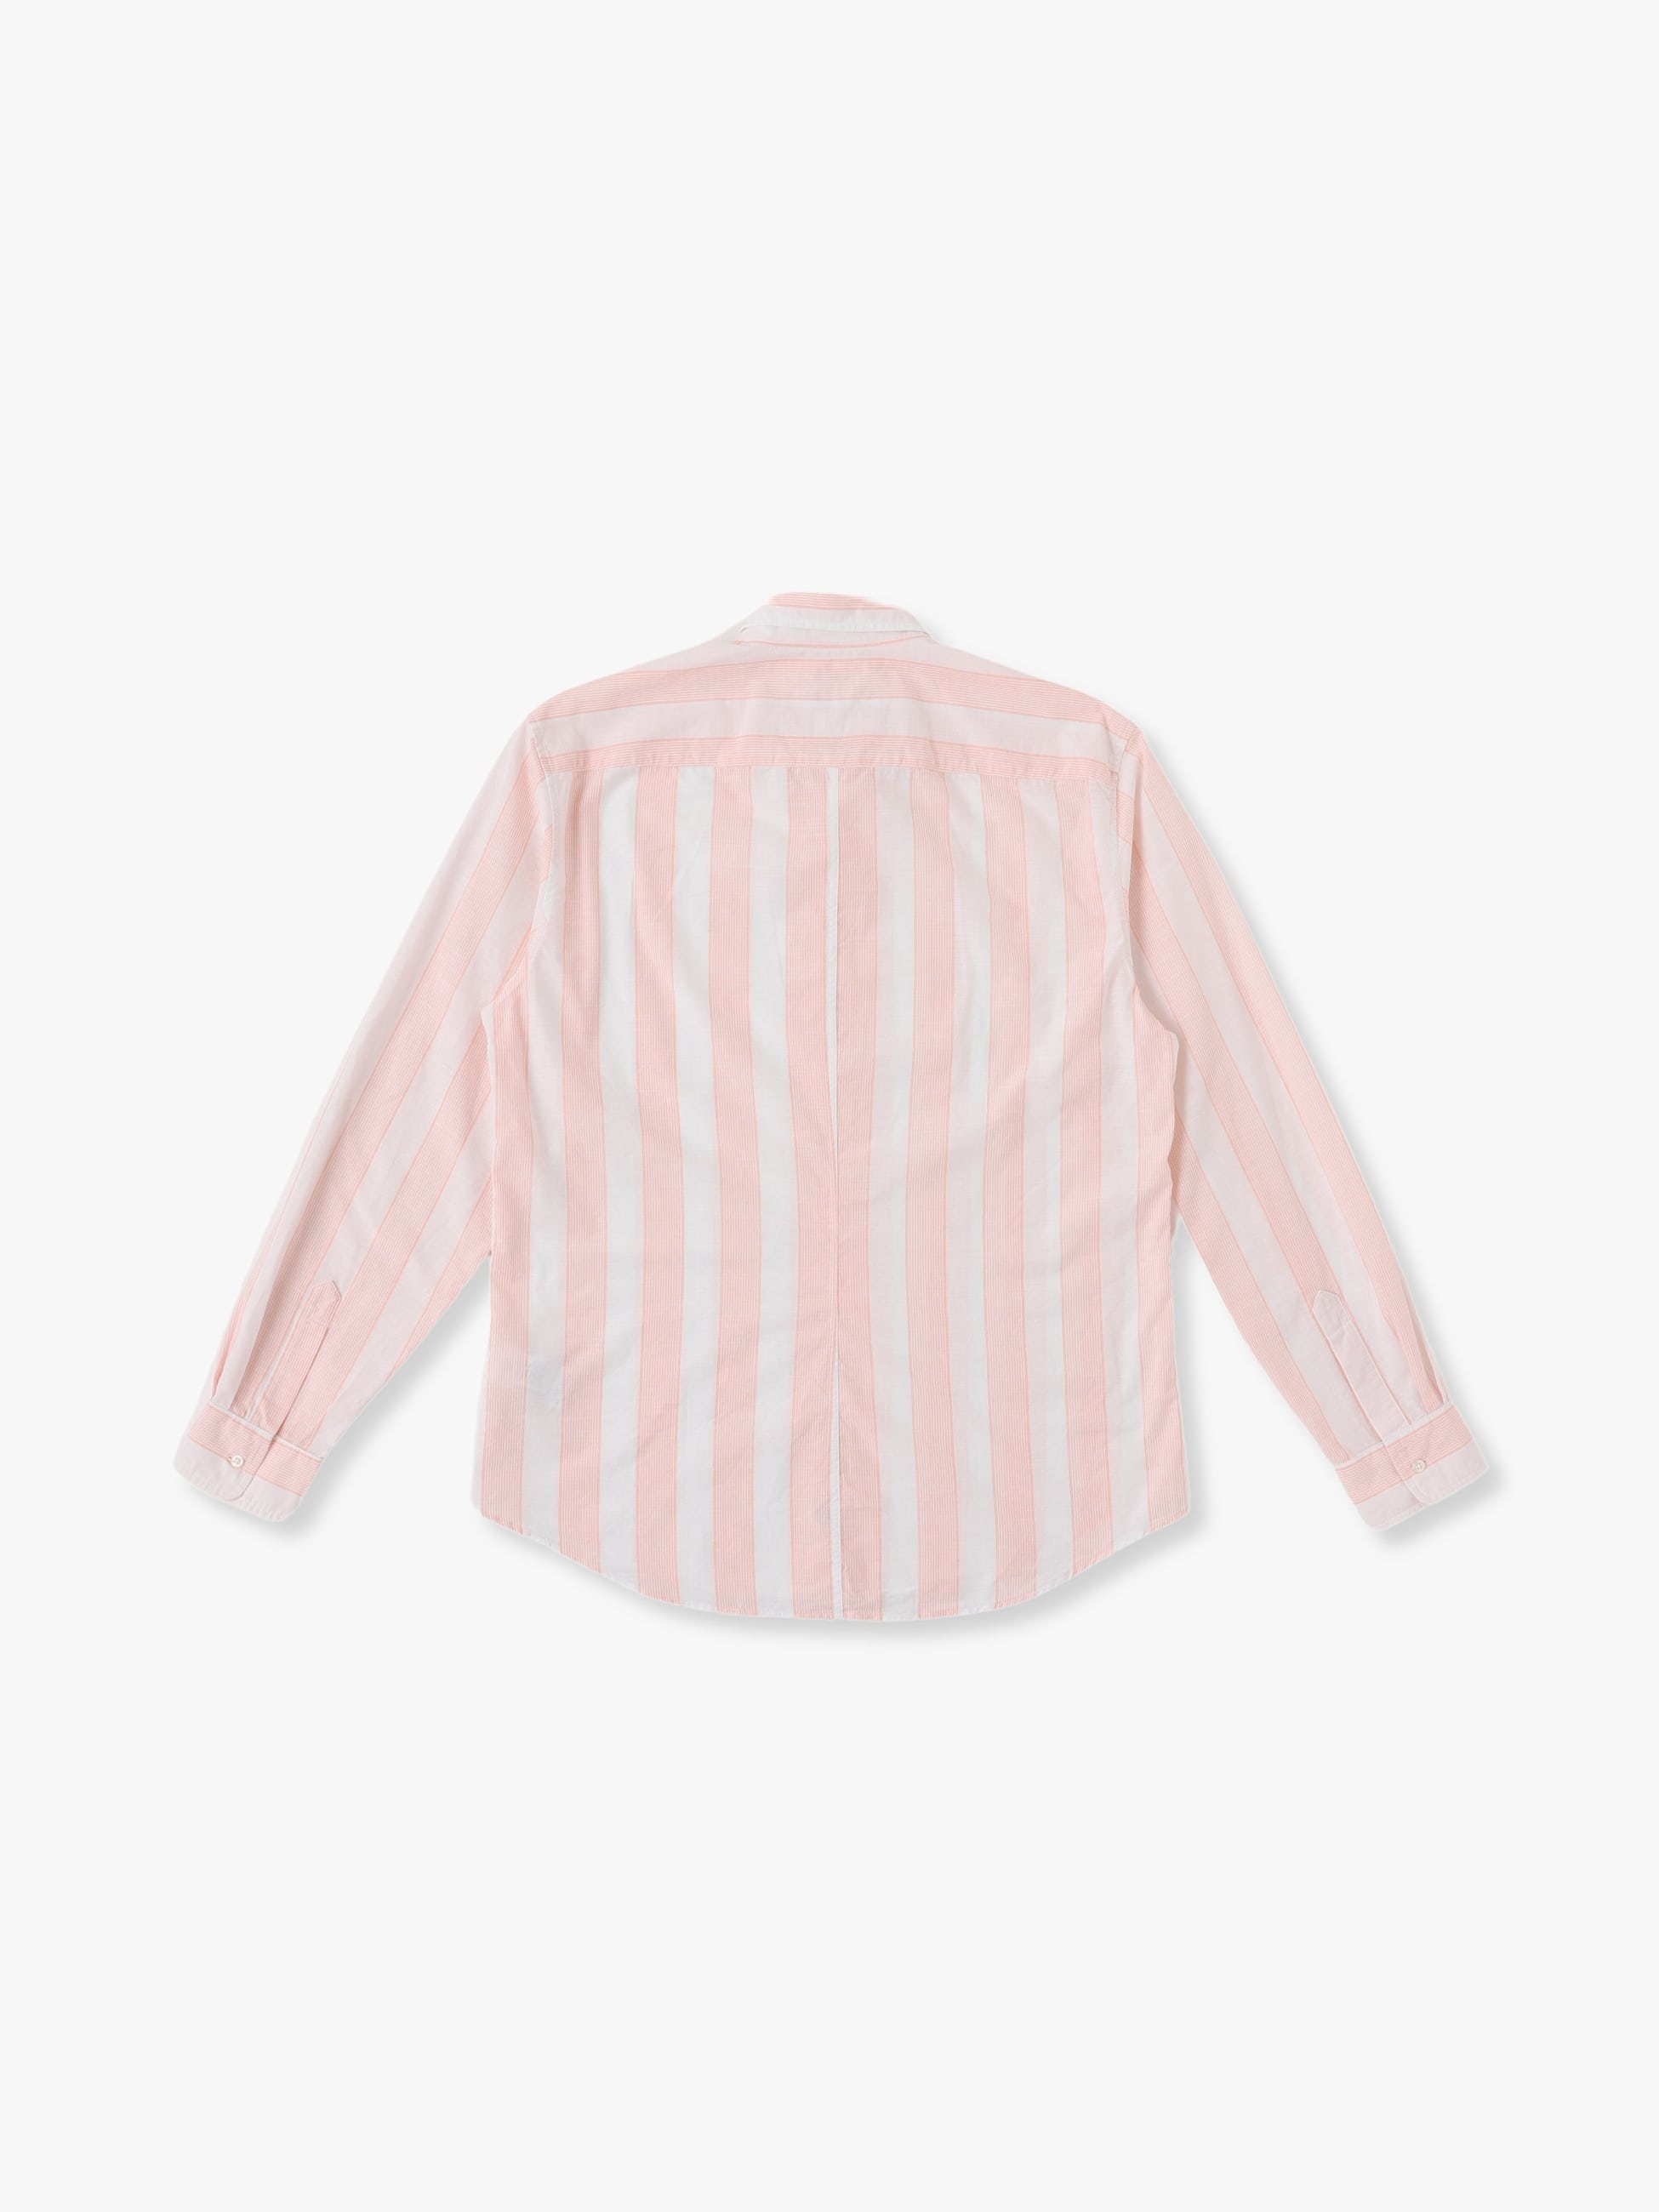 Finbar TWCB Shirt 詳細画像 light pink 1